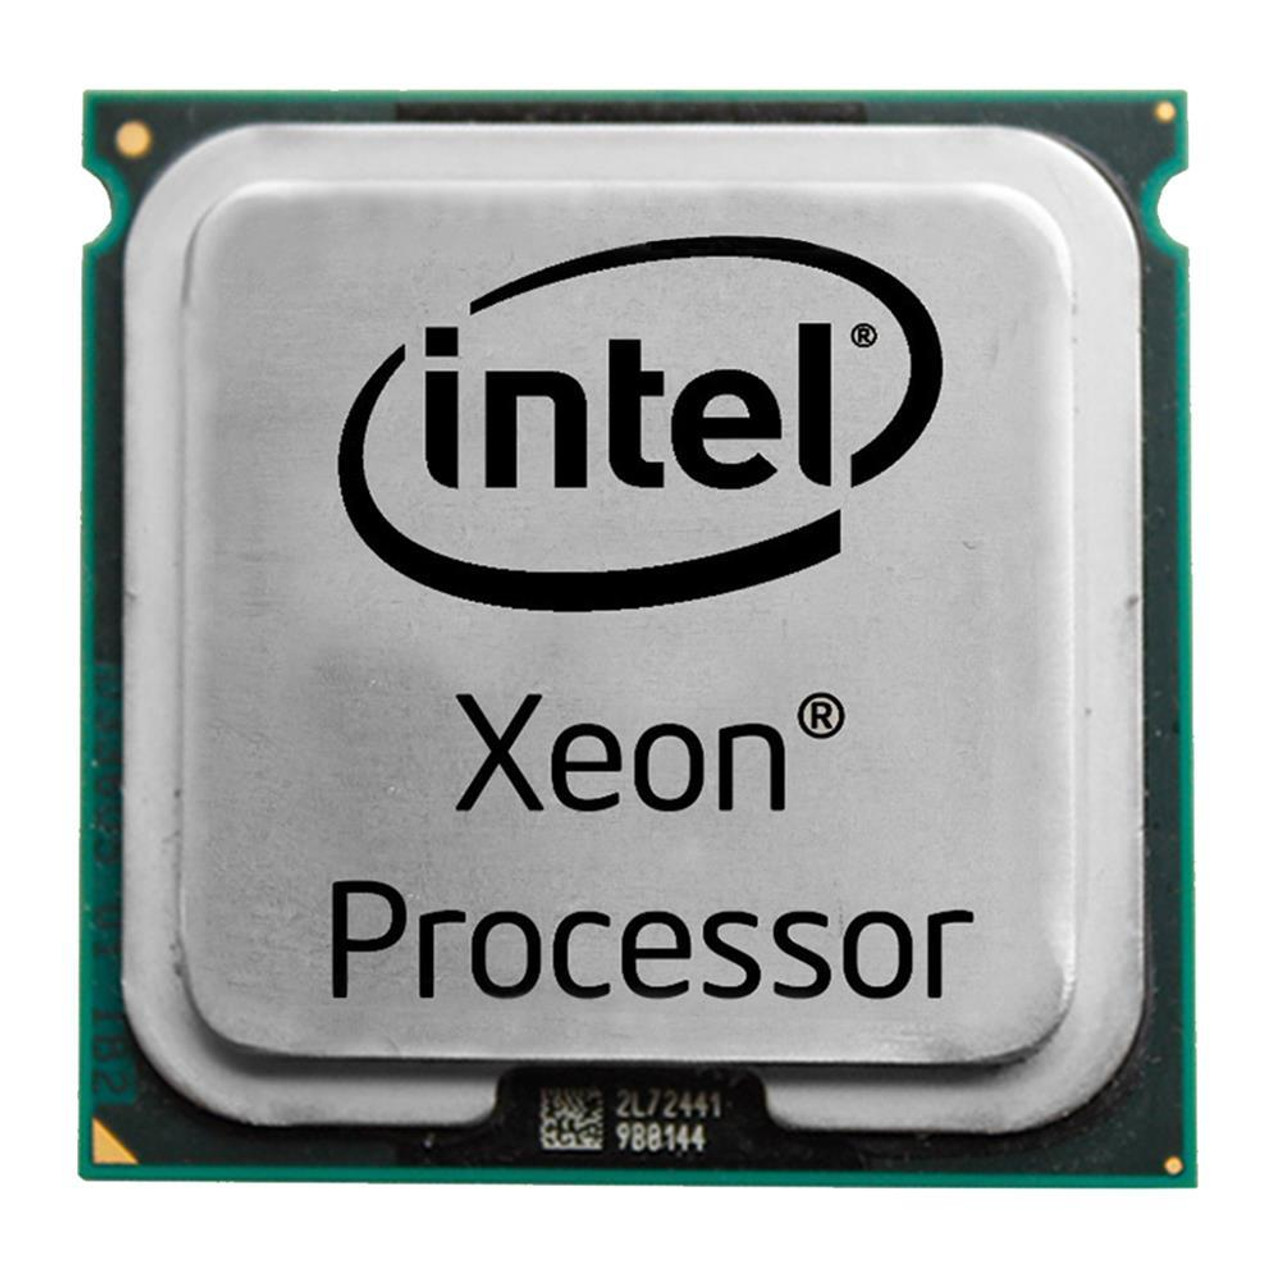 SLAG9S Intel Xeon 5160 Dual Core 3.00GHz 1333MHz FSB 4MB L2 Cache Socket LGA771 Processor